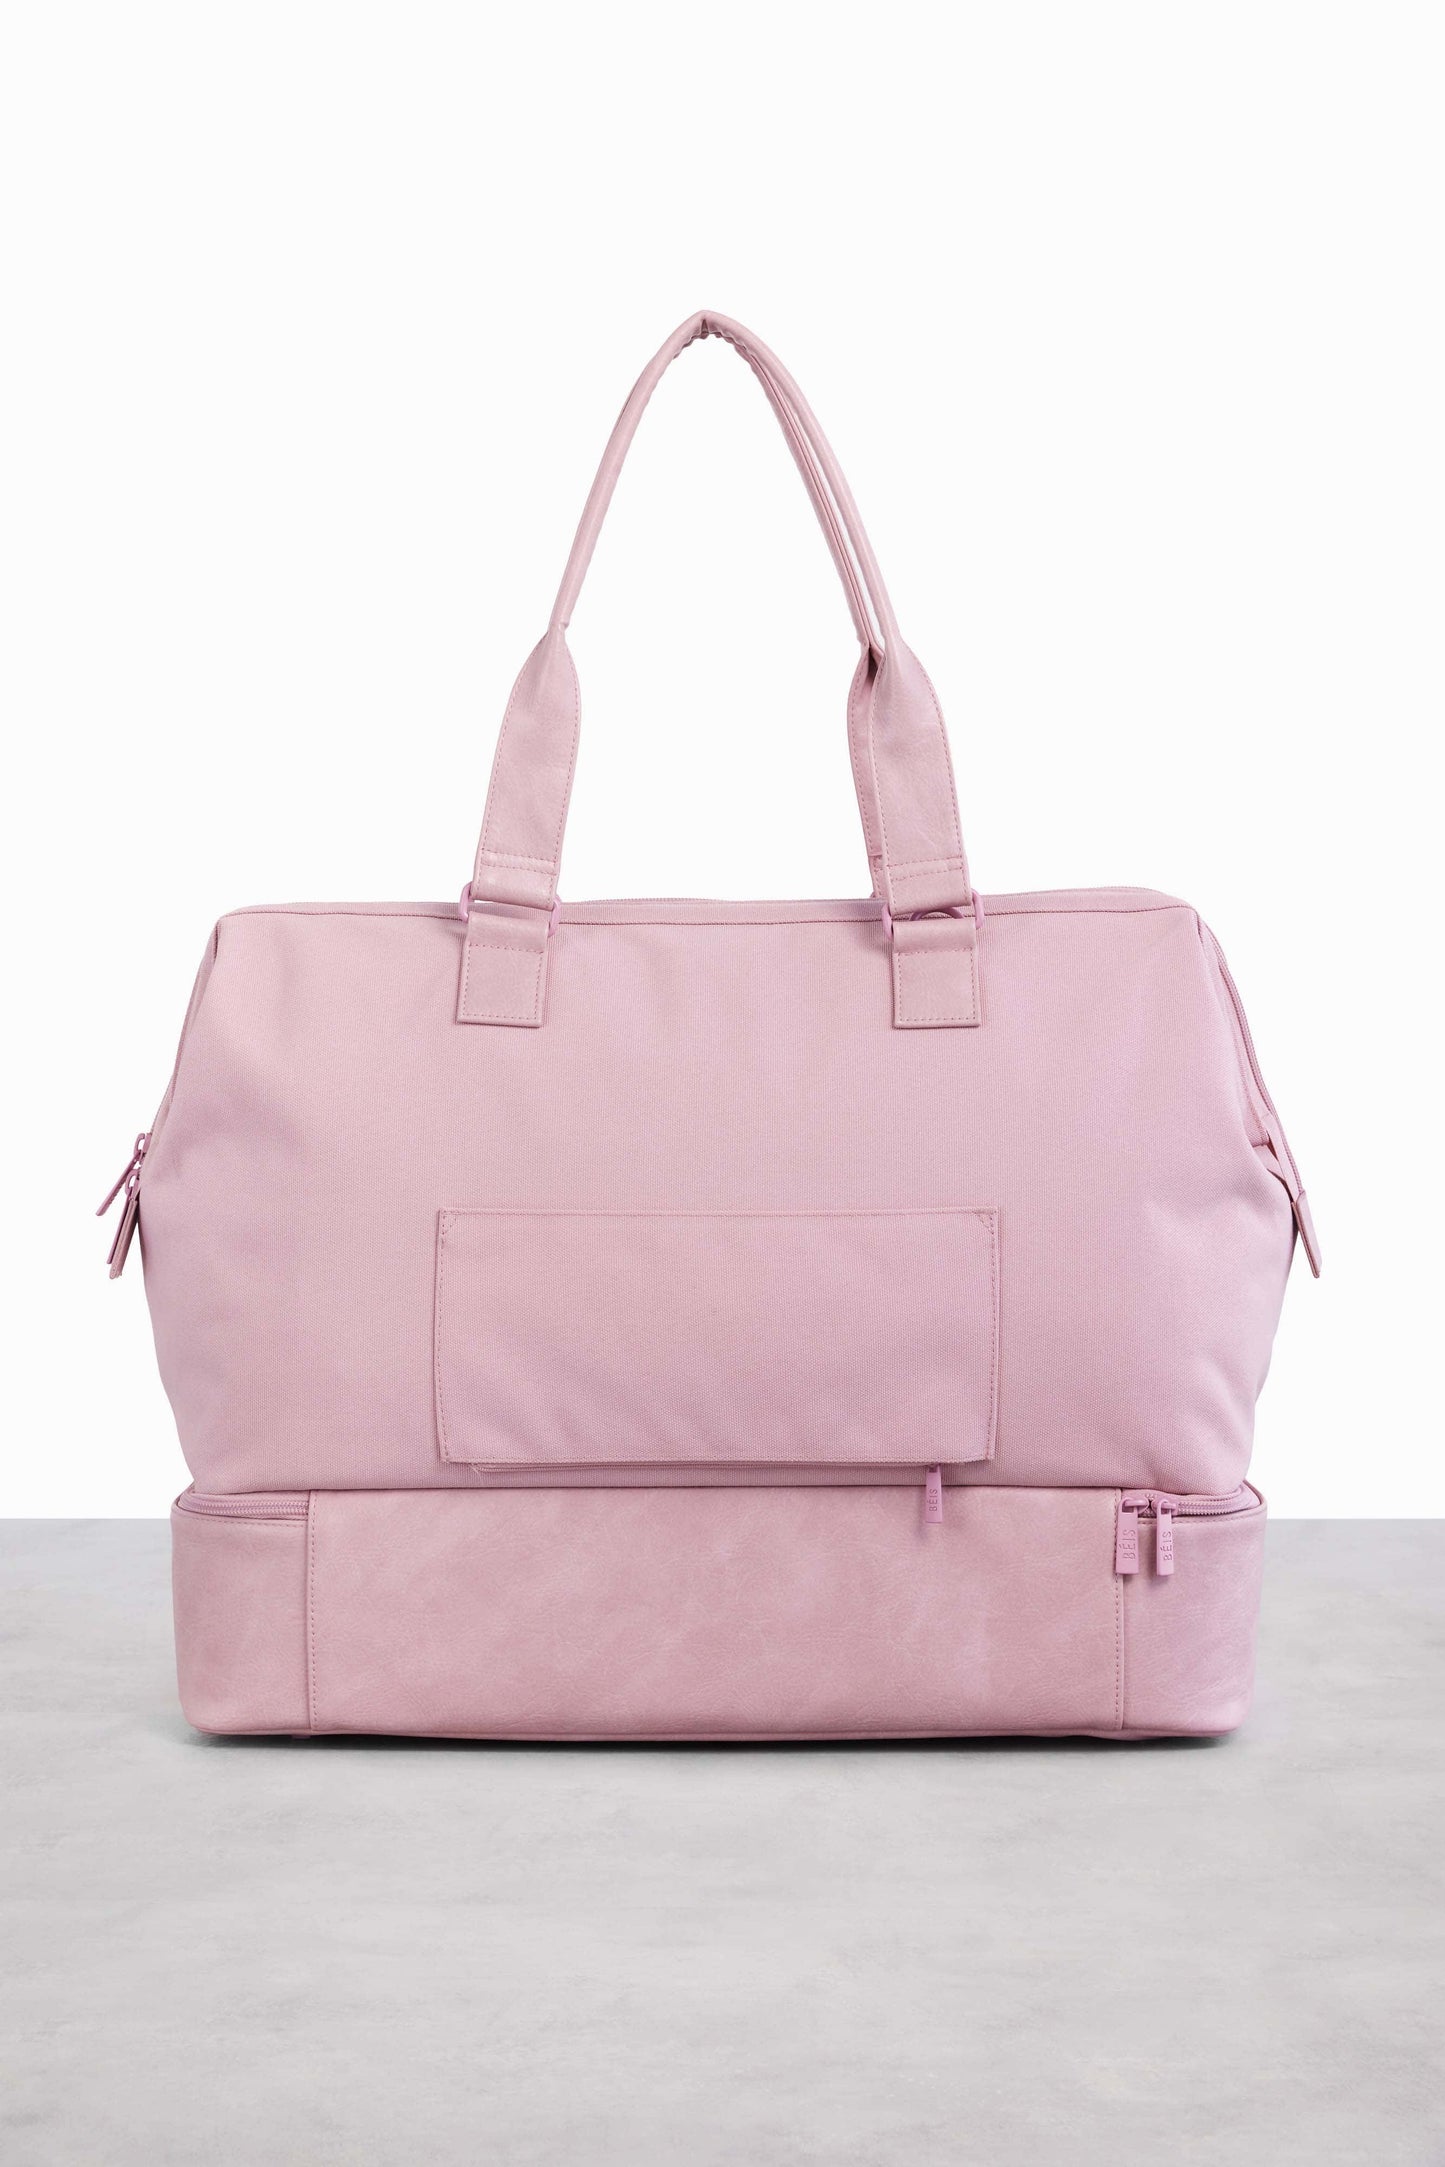 BÉIS 'The Convertible Weekender' in Atlas Pink - Pink Weekender Bag &  Overnight Bag